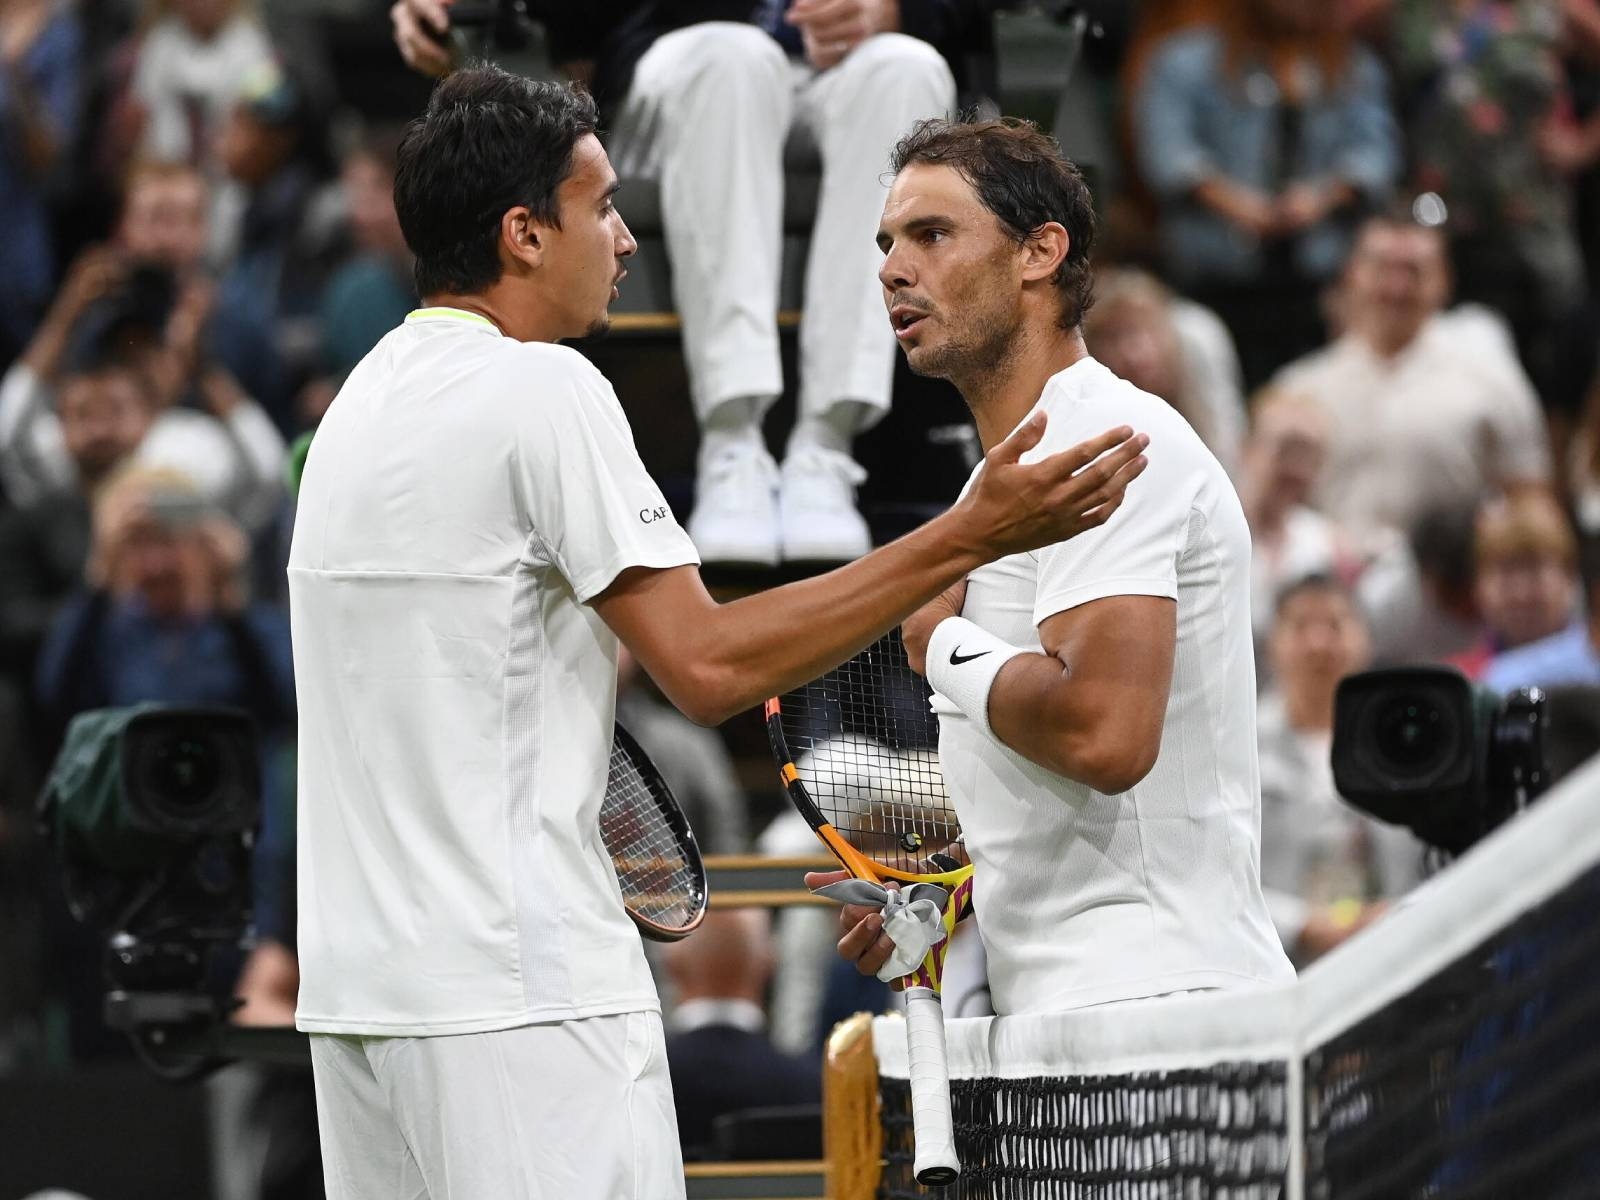 Rafael Nadal 溫網賽中把對手叫到「網前訓話」引爭議，事後道歉：「我錯了」依然讓網友不滿！